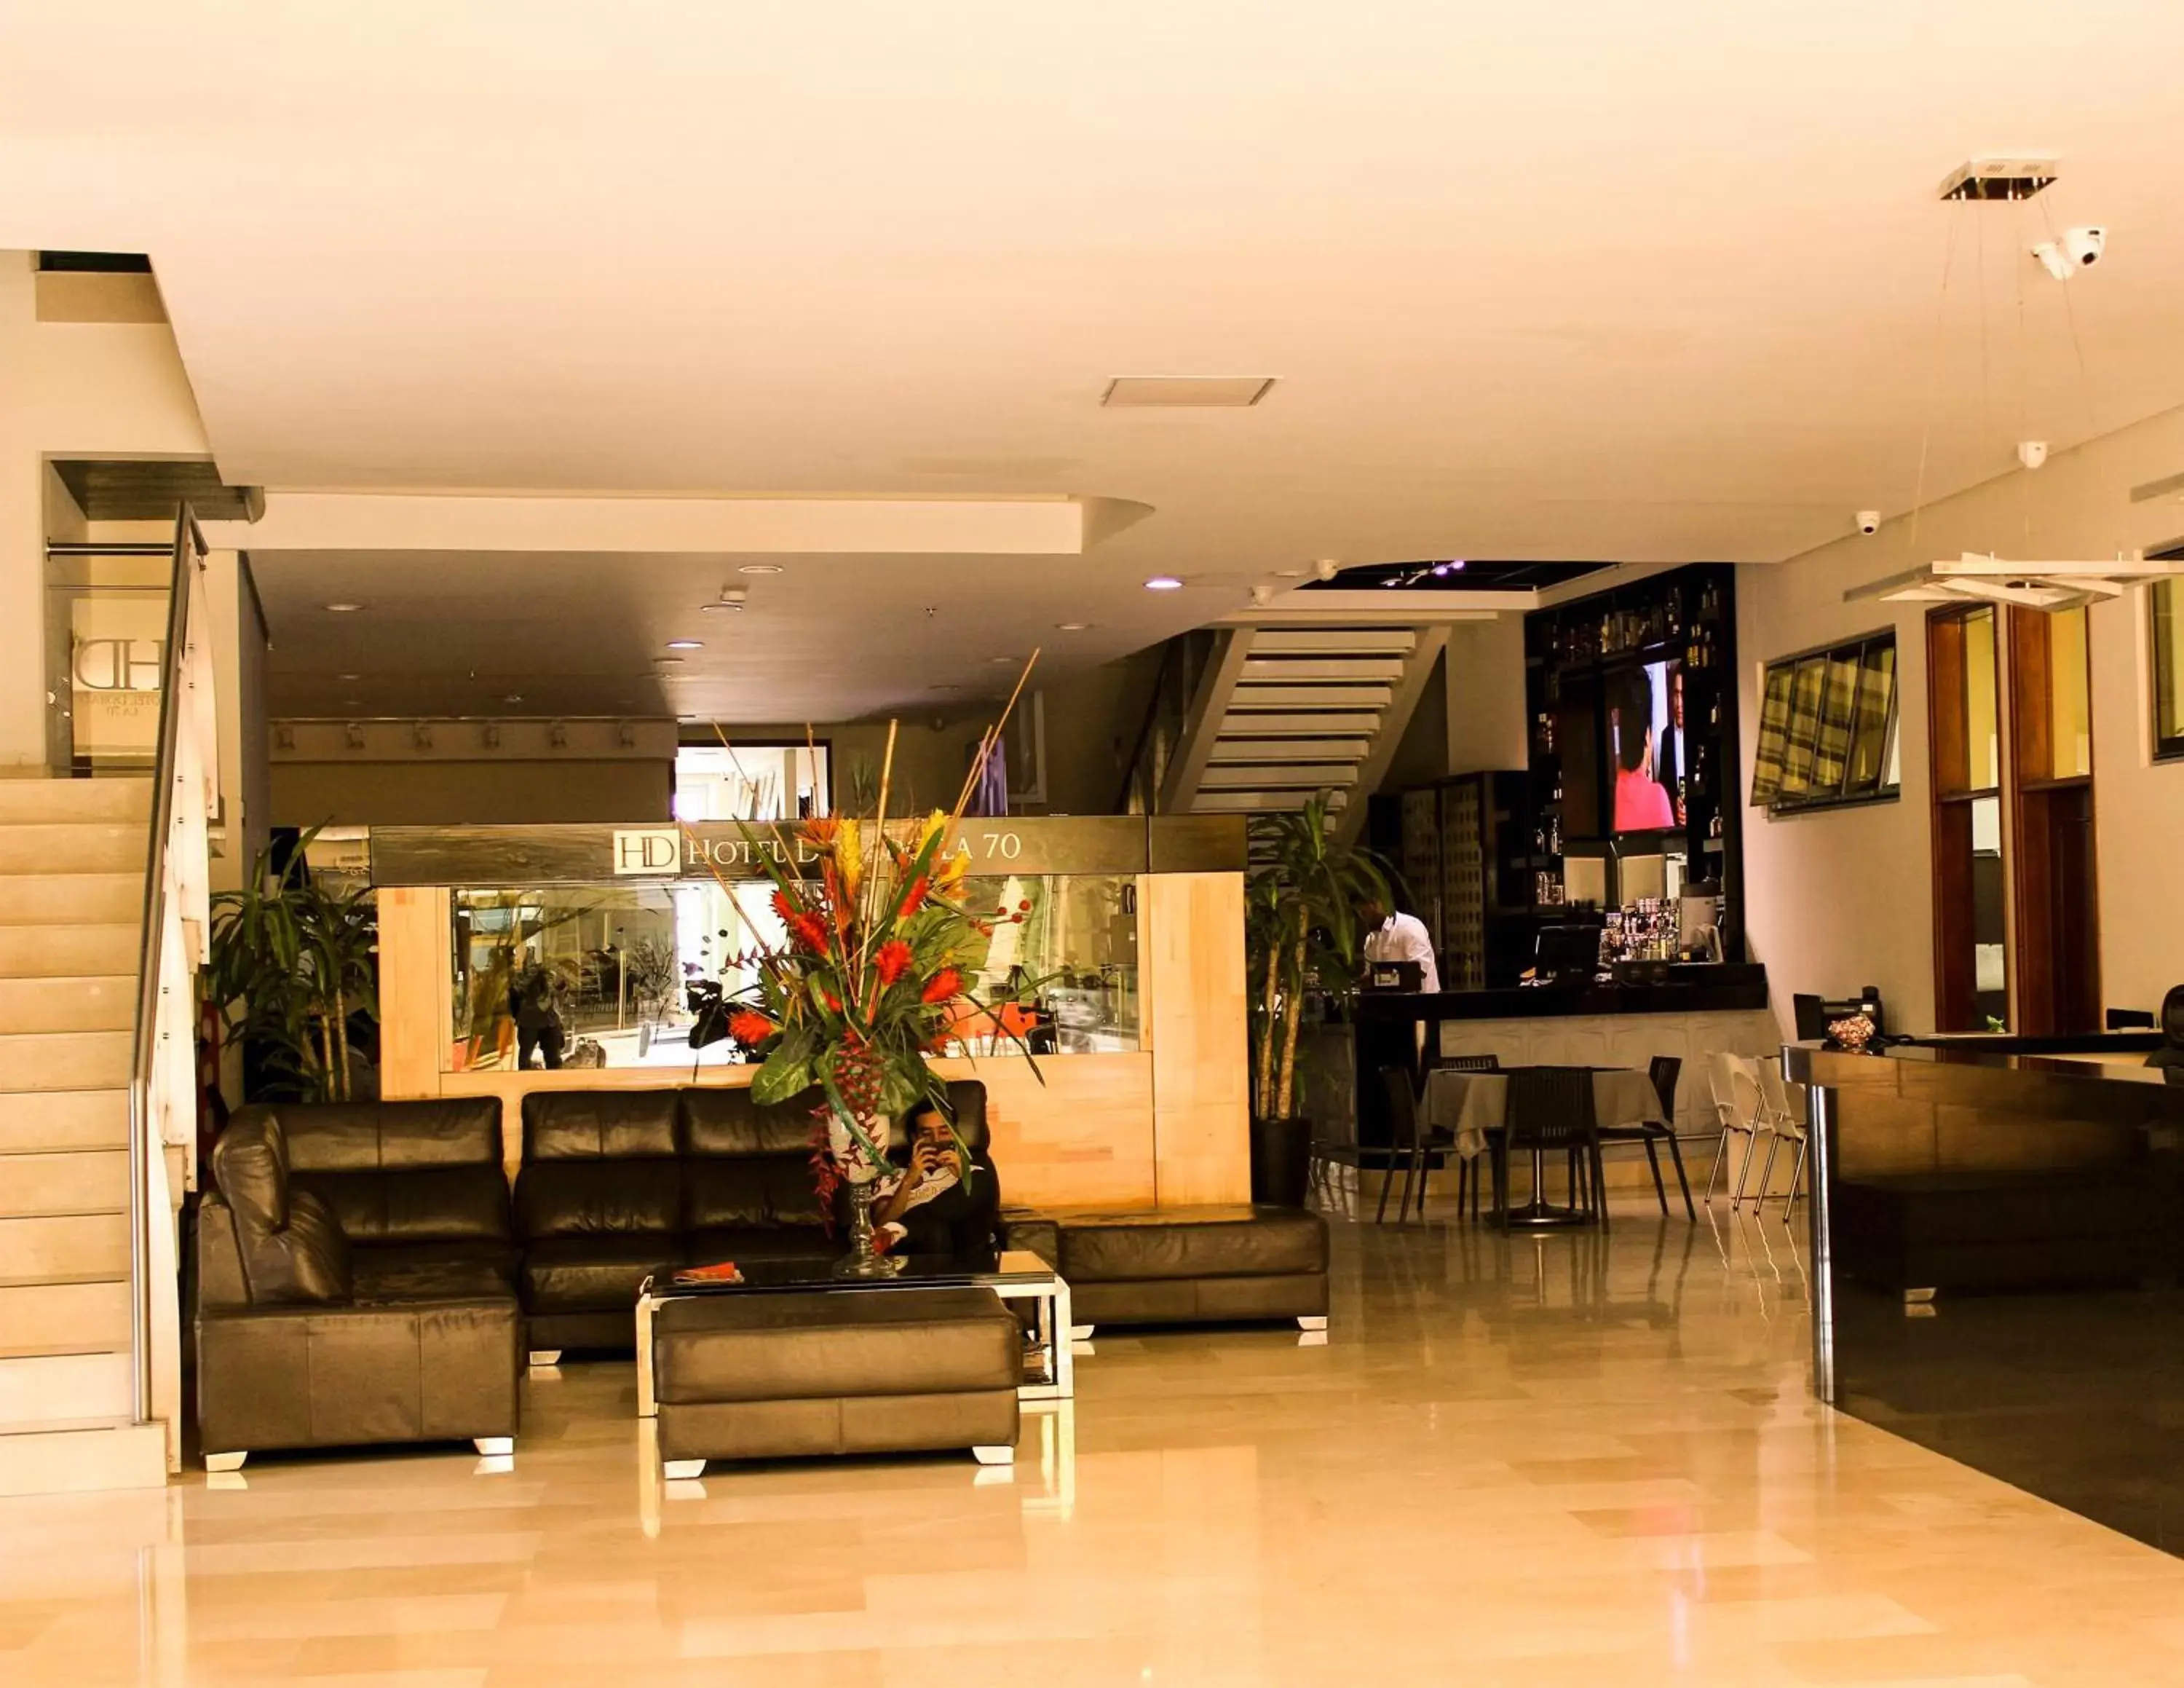 Lobby or reception, Lobby/Reception in Hotel Dorado La 70